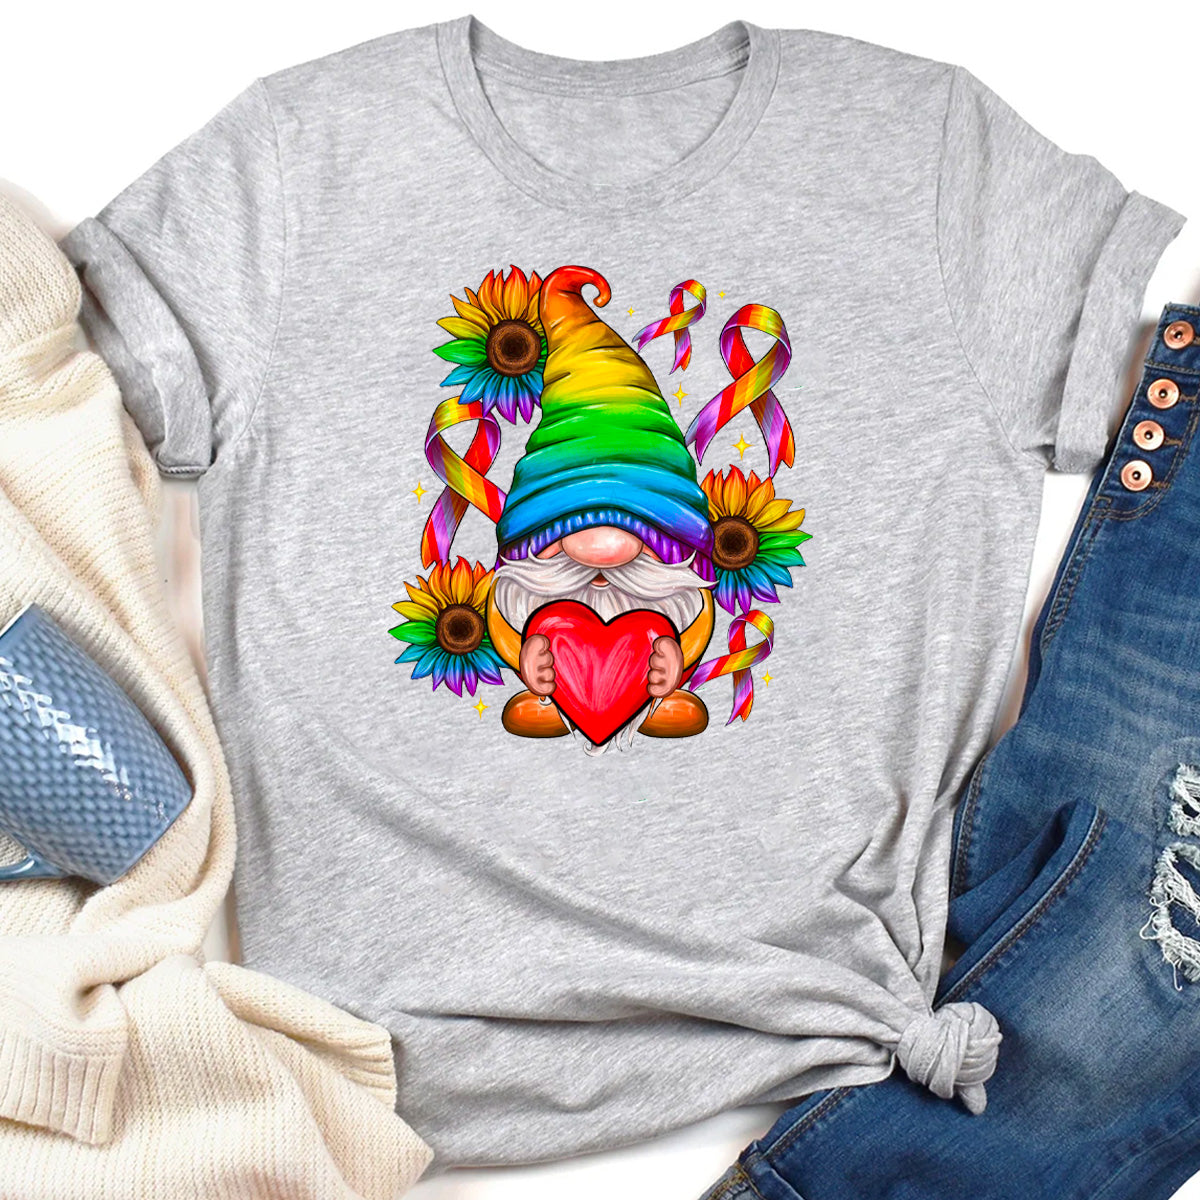 LGBTQ+ Love Is Love T-Shirt